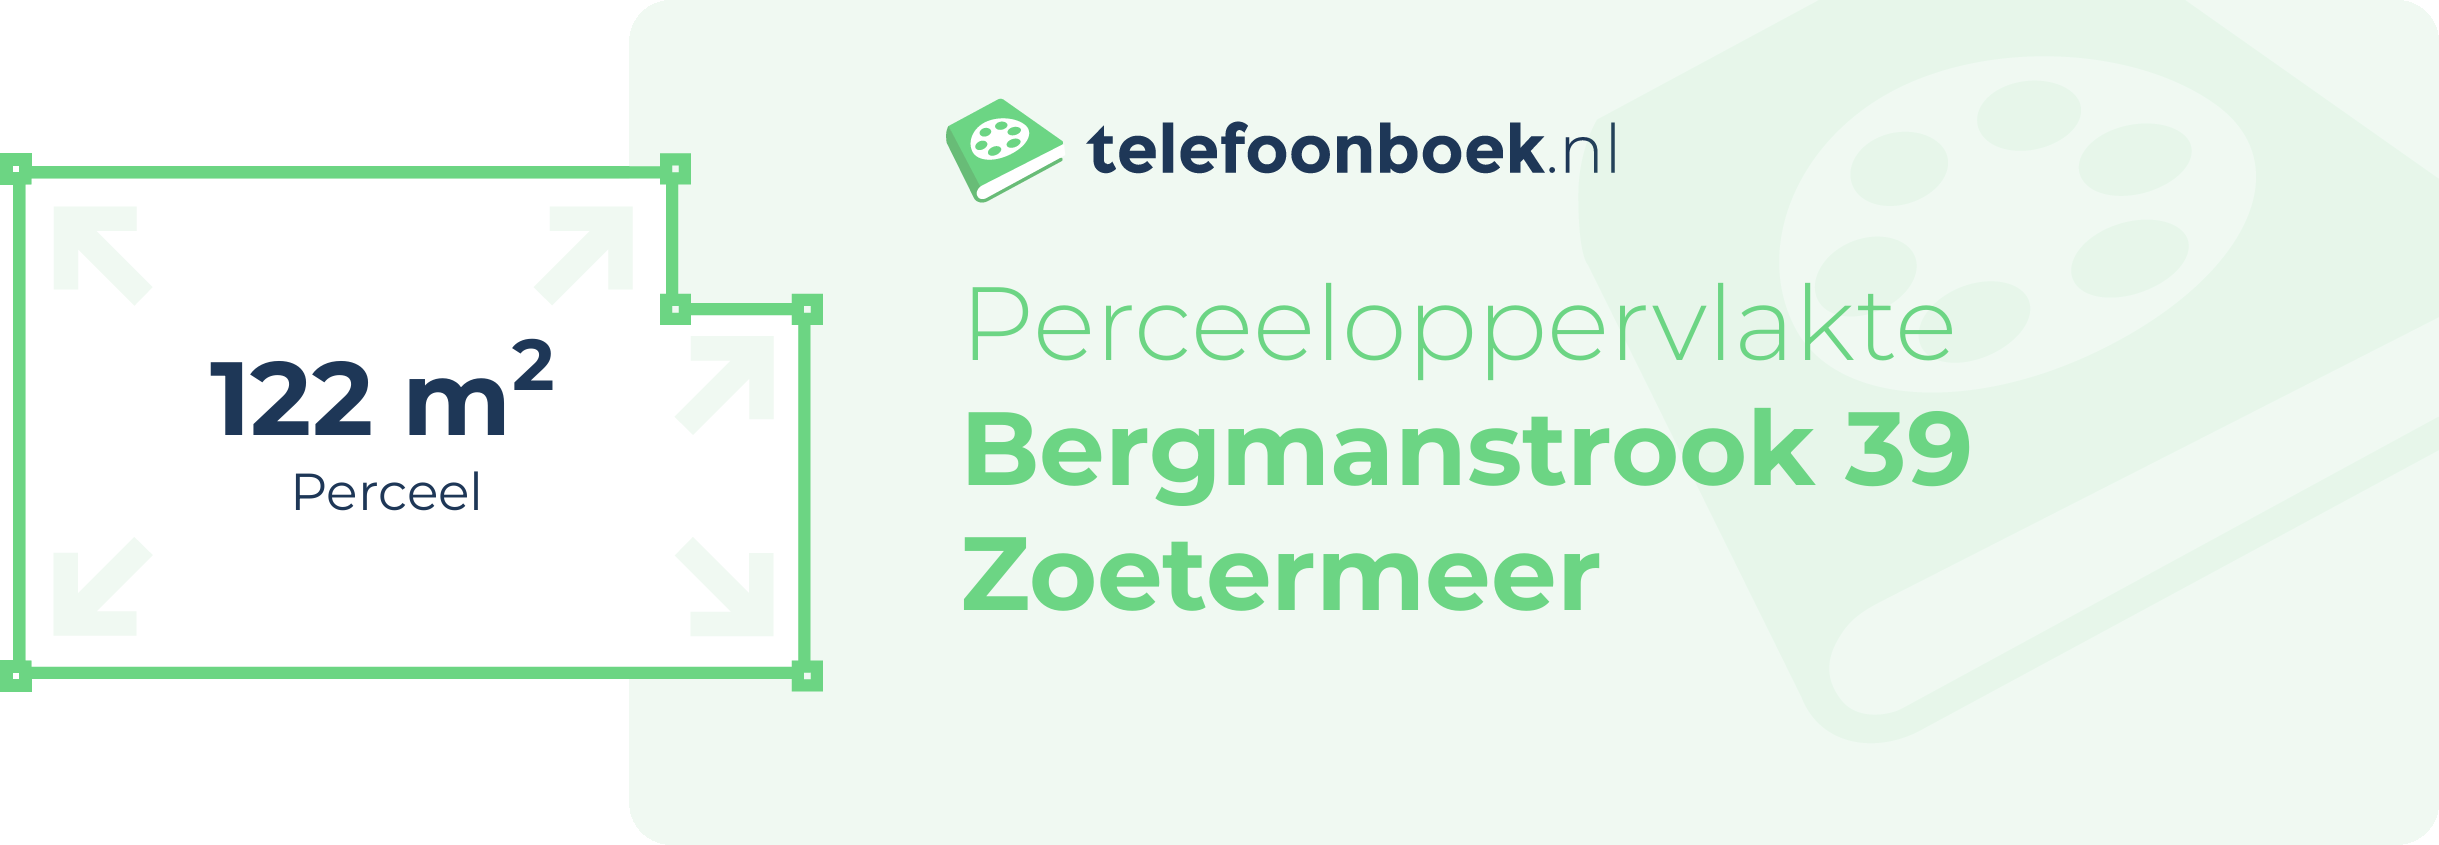 Perceeloppervlakte Bergmanstrook 39 Zoetermeer